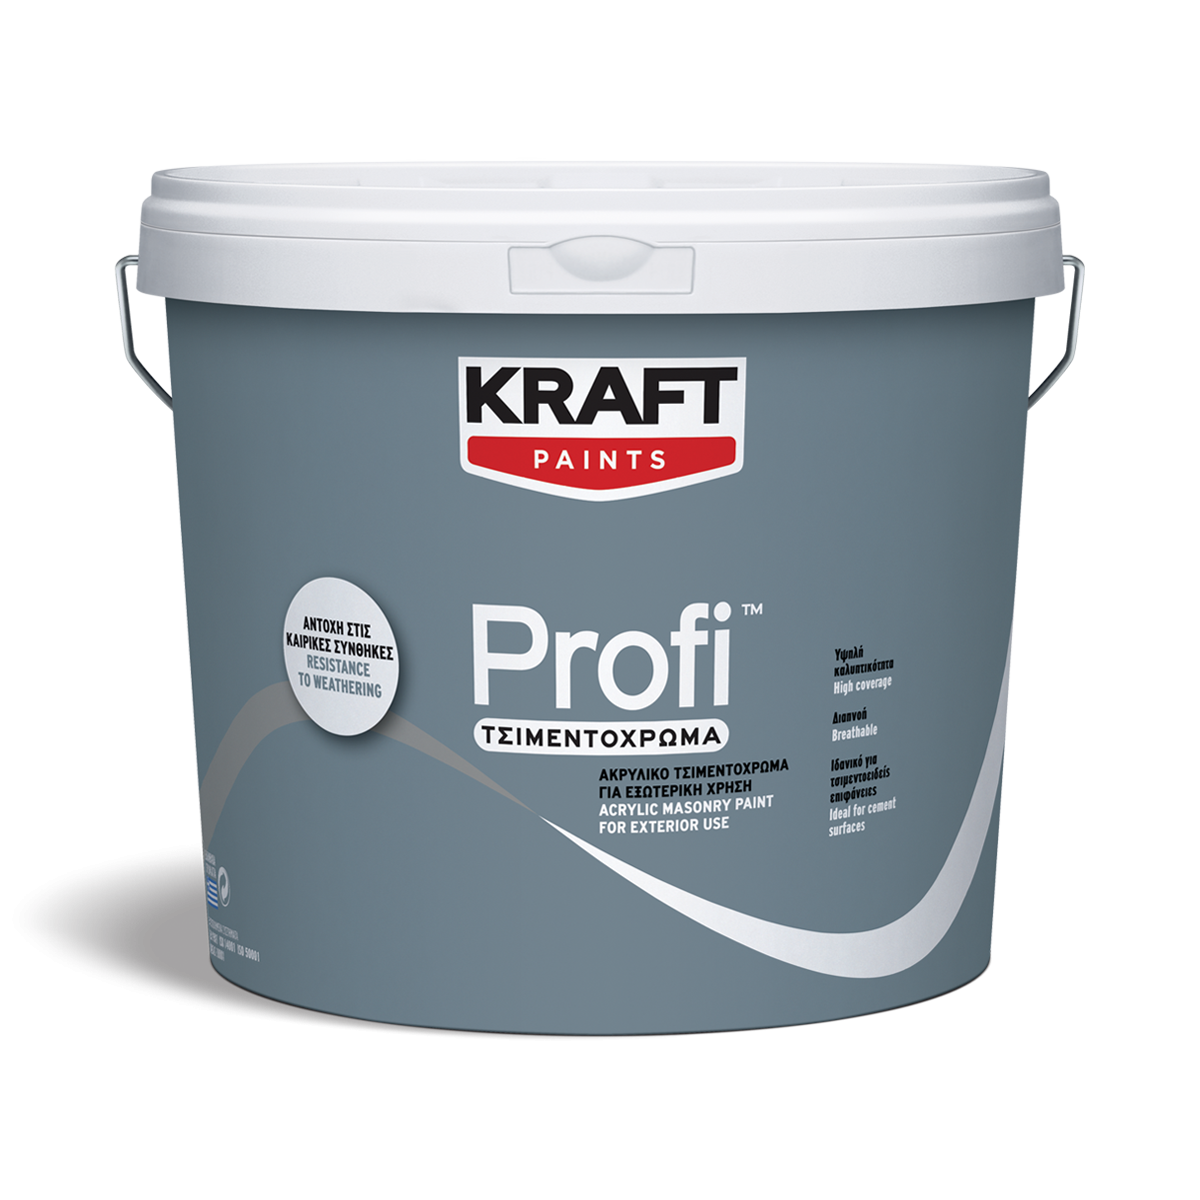 Ακρυλικό Τσιμεντόχρωμα Profi- Kraft Paints "Γκρι" 9L